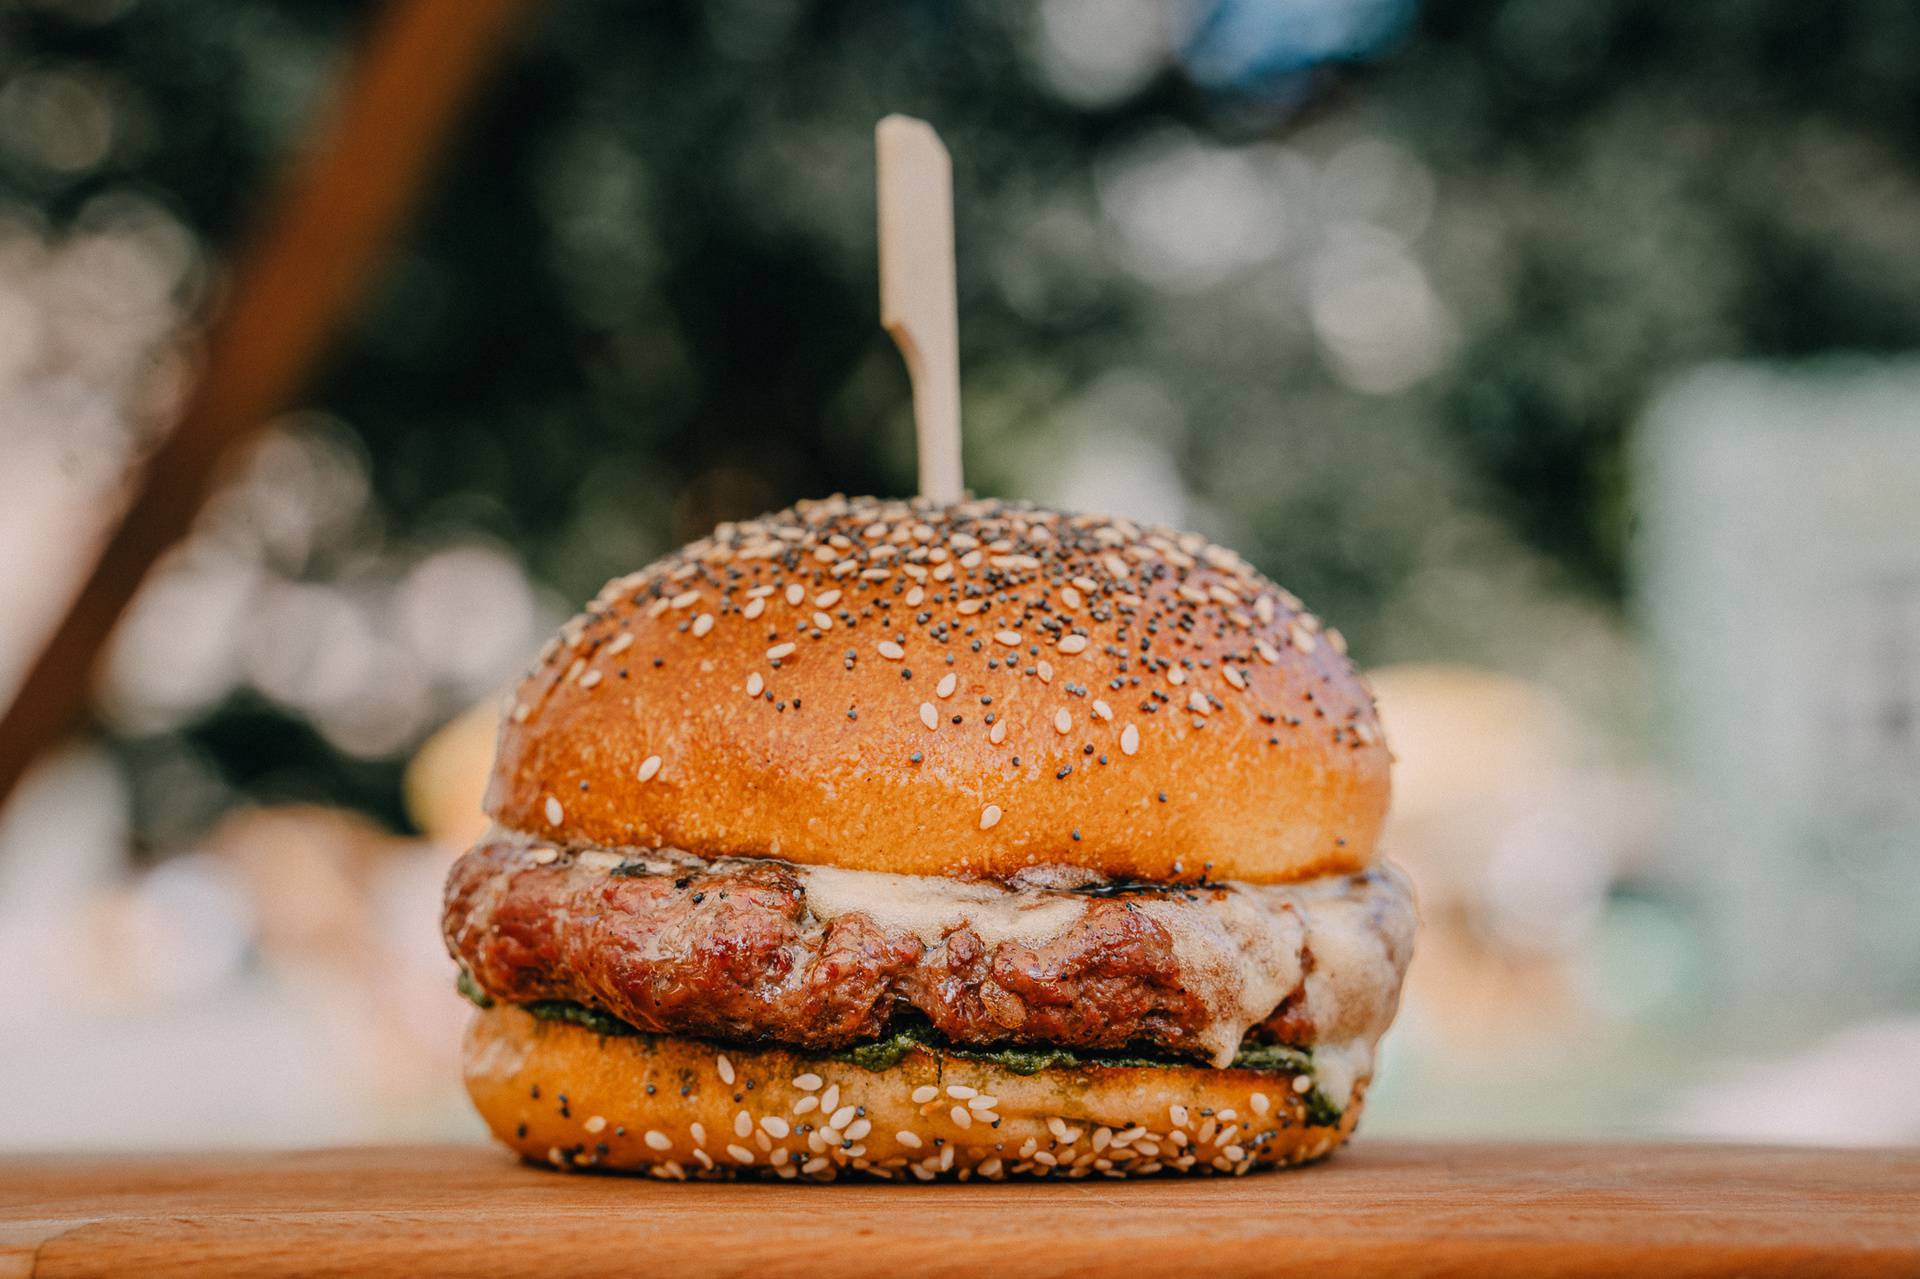 Otvoren Zagreb Burger Festival za sve ljubitelje mesnih delicija